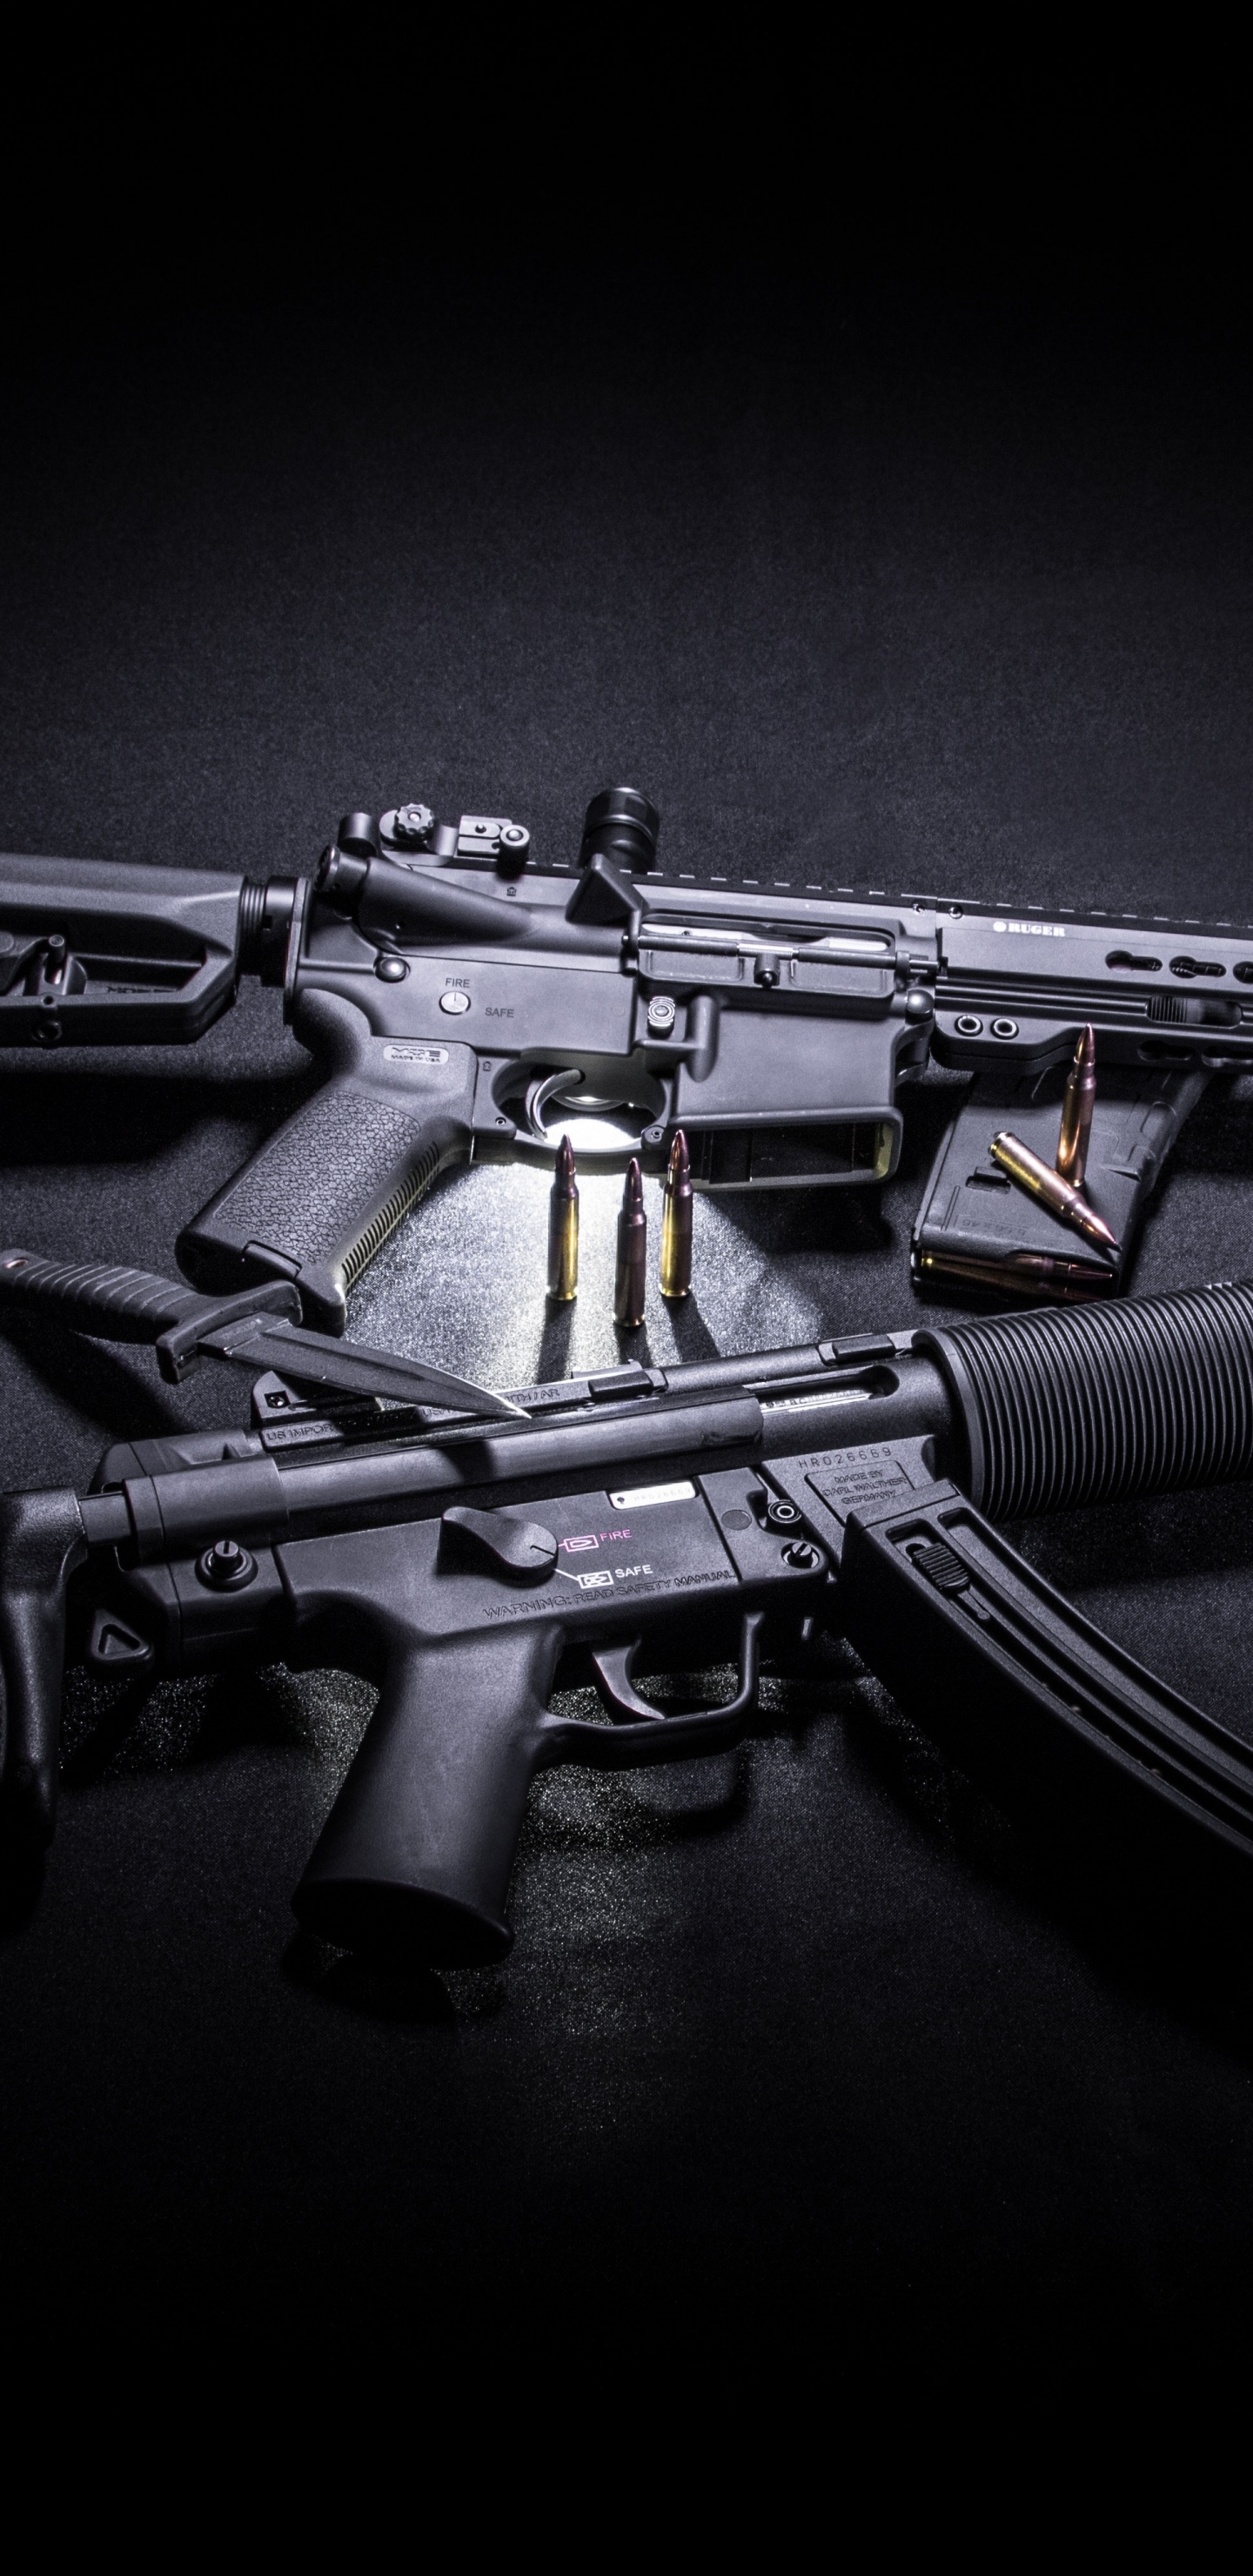 Feuerwaffe, STURMGEWEHR, Trigger, Gun Barrel, Maschinengewehr. Wallpaper in 1440x2960 Resolution